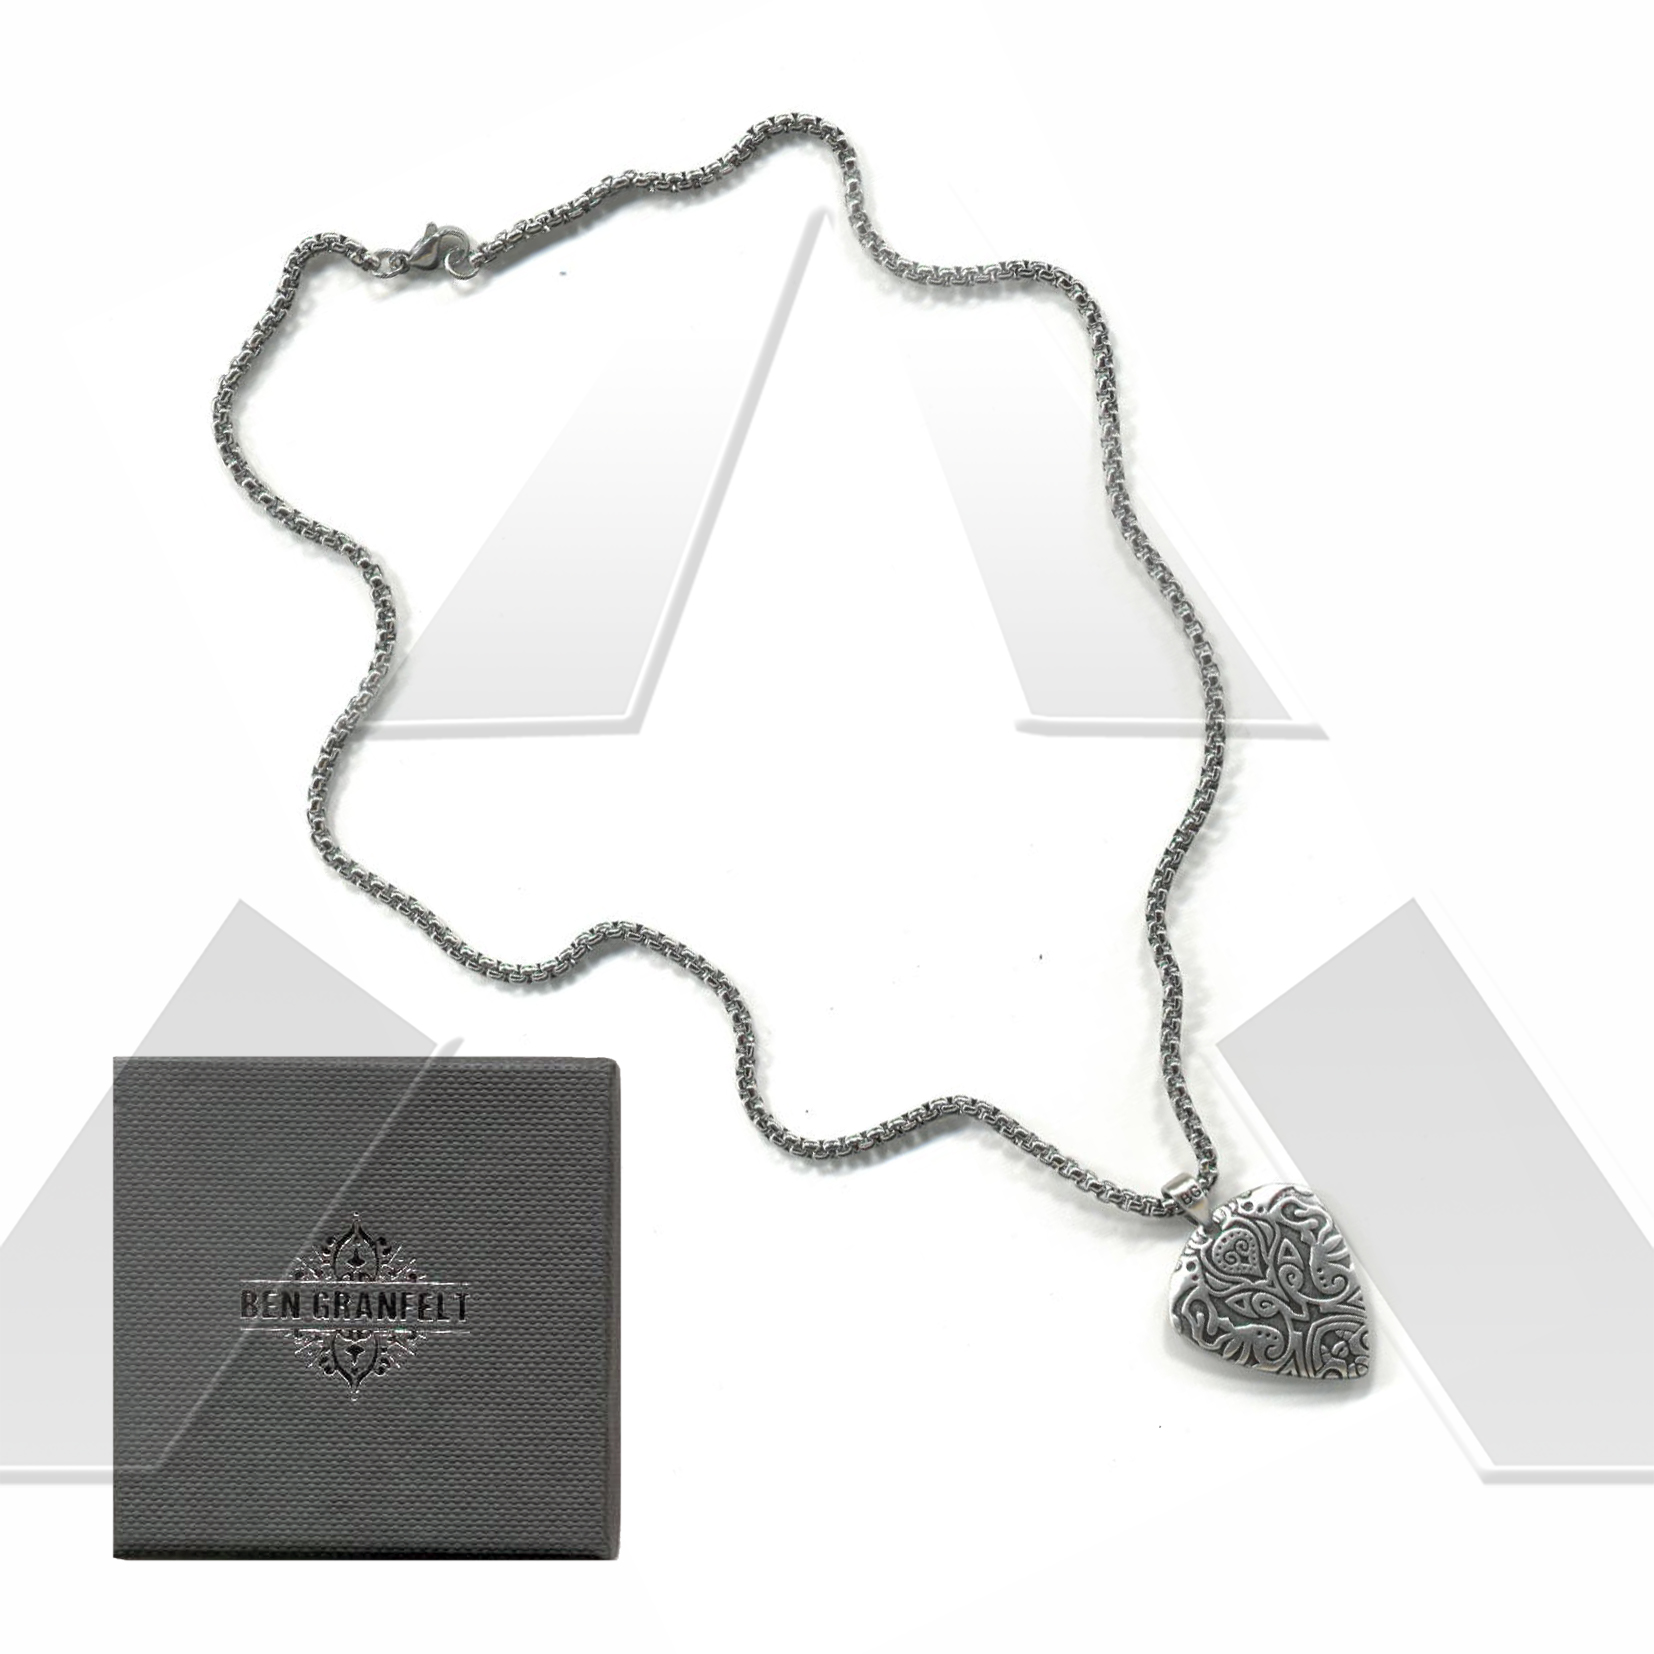 Ben Granfelt ★ Necklaces with pendant